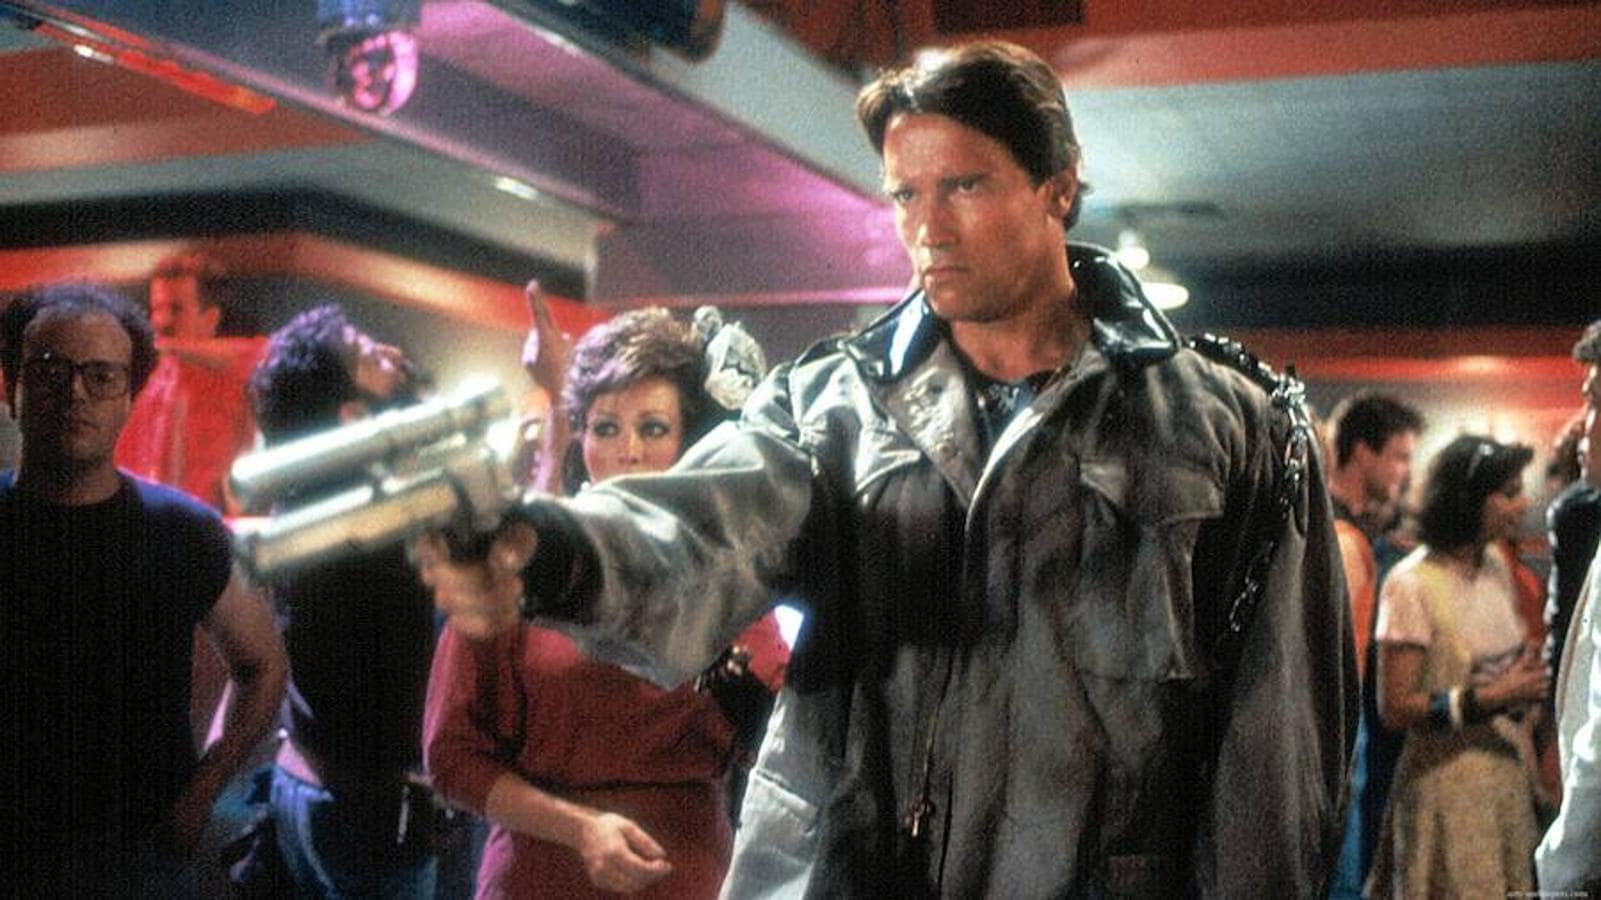 «Terminator». La primera película titulada simplemente «Terminator» se estrenó en 1984 y fue dirigida por James Cameron y protagonizada por Arnold Schwarzenegger en el papel del cyborg conocido como T-800. En los años 80, aparece un ciborg enviado desde el año 2029 para asesinar a Sarah Connor, una camarera inocente que se convertirá en madre y mentora del líder de la humanidad en la guerra contra las máquinas. Para evitar que cumpla su misión, un soldado de dicha guerra es enviado para protegerla. El futuro de la raza humana dependerá de quien encuentre primero a Sarah.